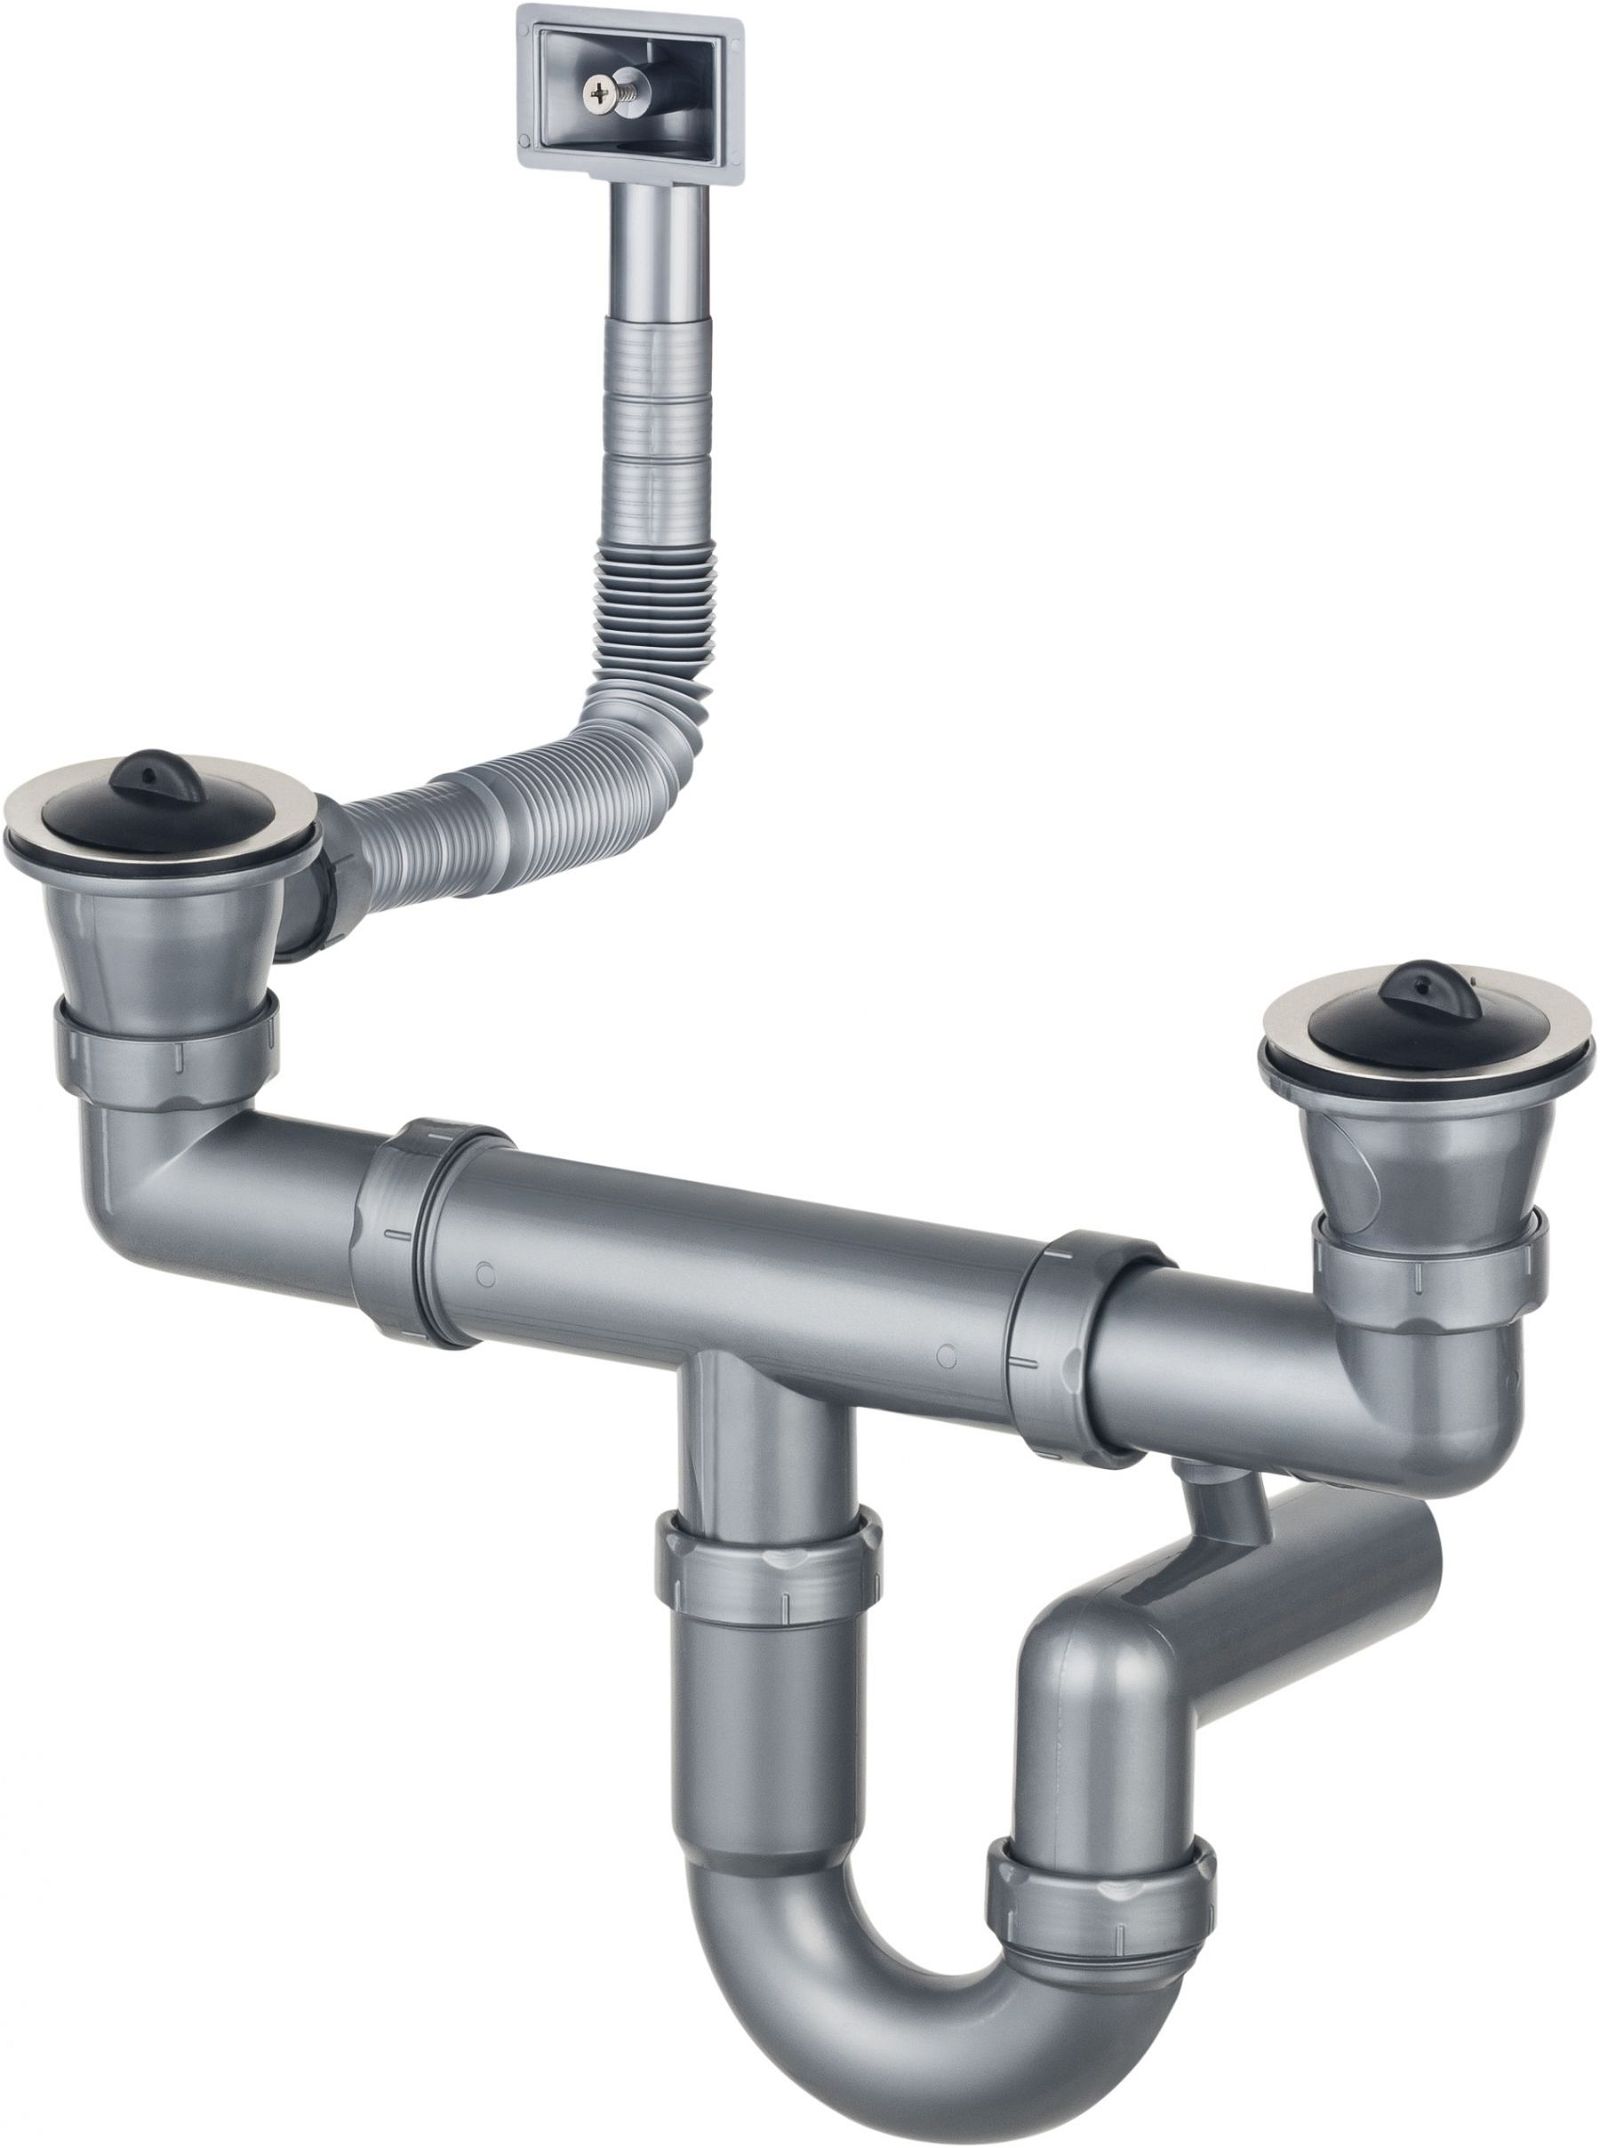 Lay-on steel sink waste kit, 2-bowl - 2" drain - ZXY_9924 - Główne zdjęcie produktowe